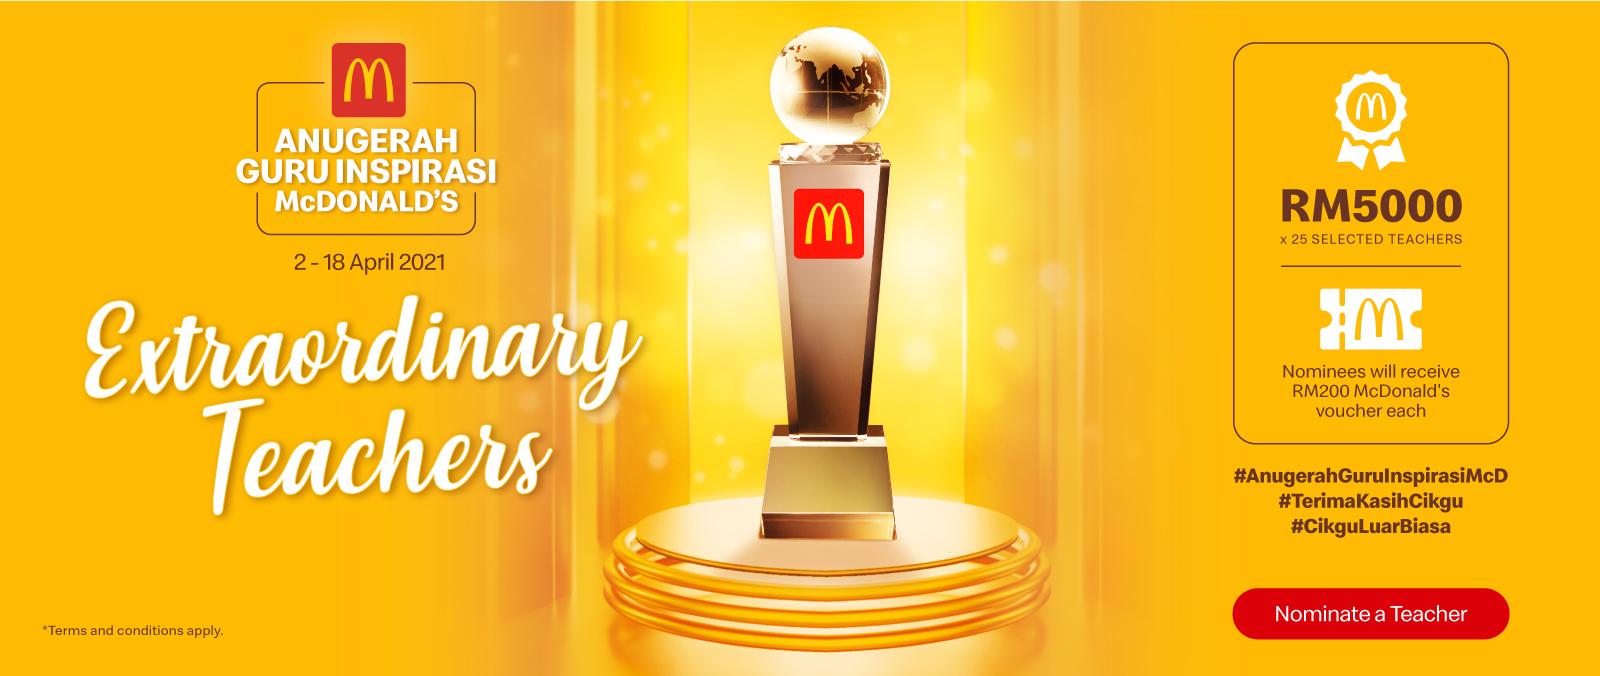 Anugerah Guru Inspirasi McDonald’s 2021's image'